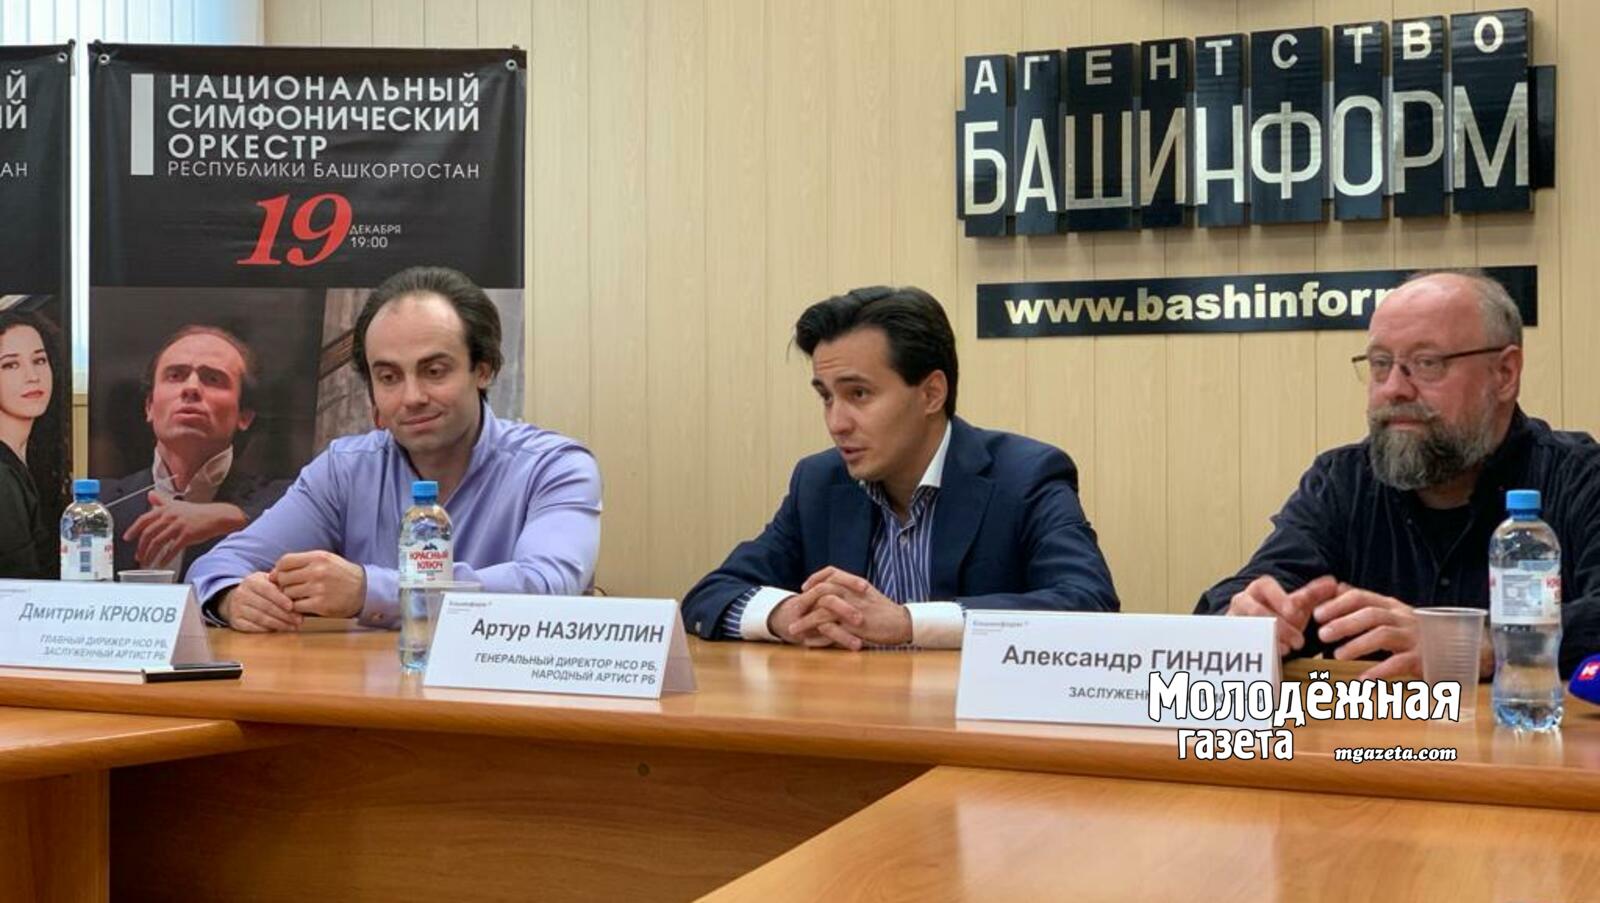 Уфа встречает V Зимний фестиваль Госоркестра РБ, посвященный юбилею Сергея Рахманинова